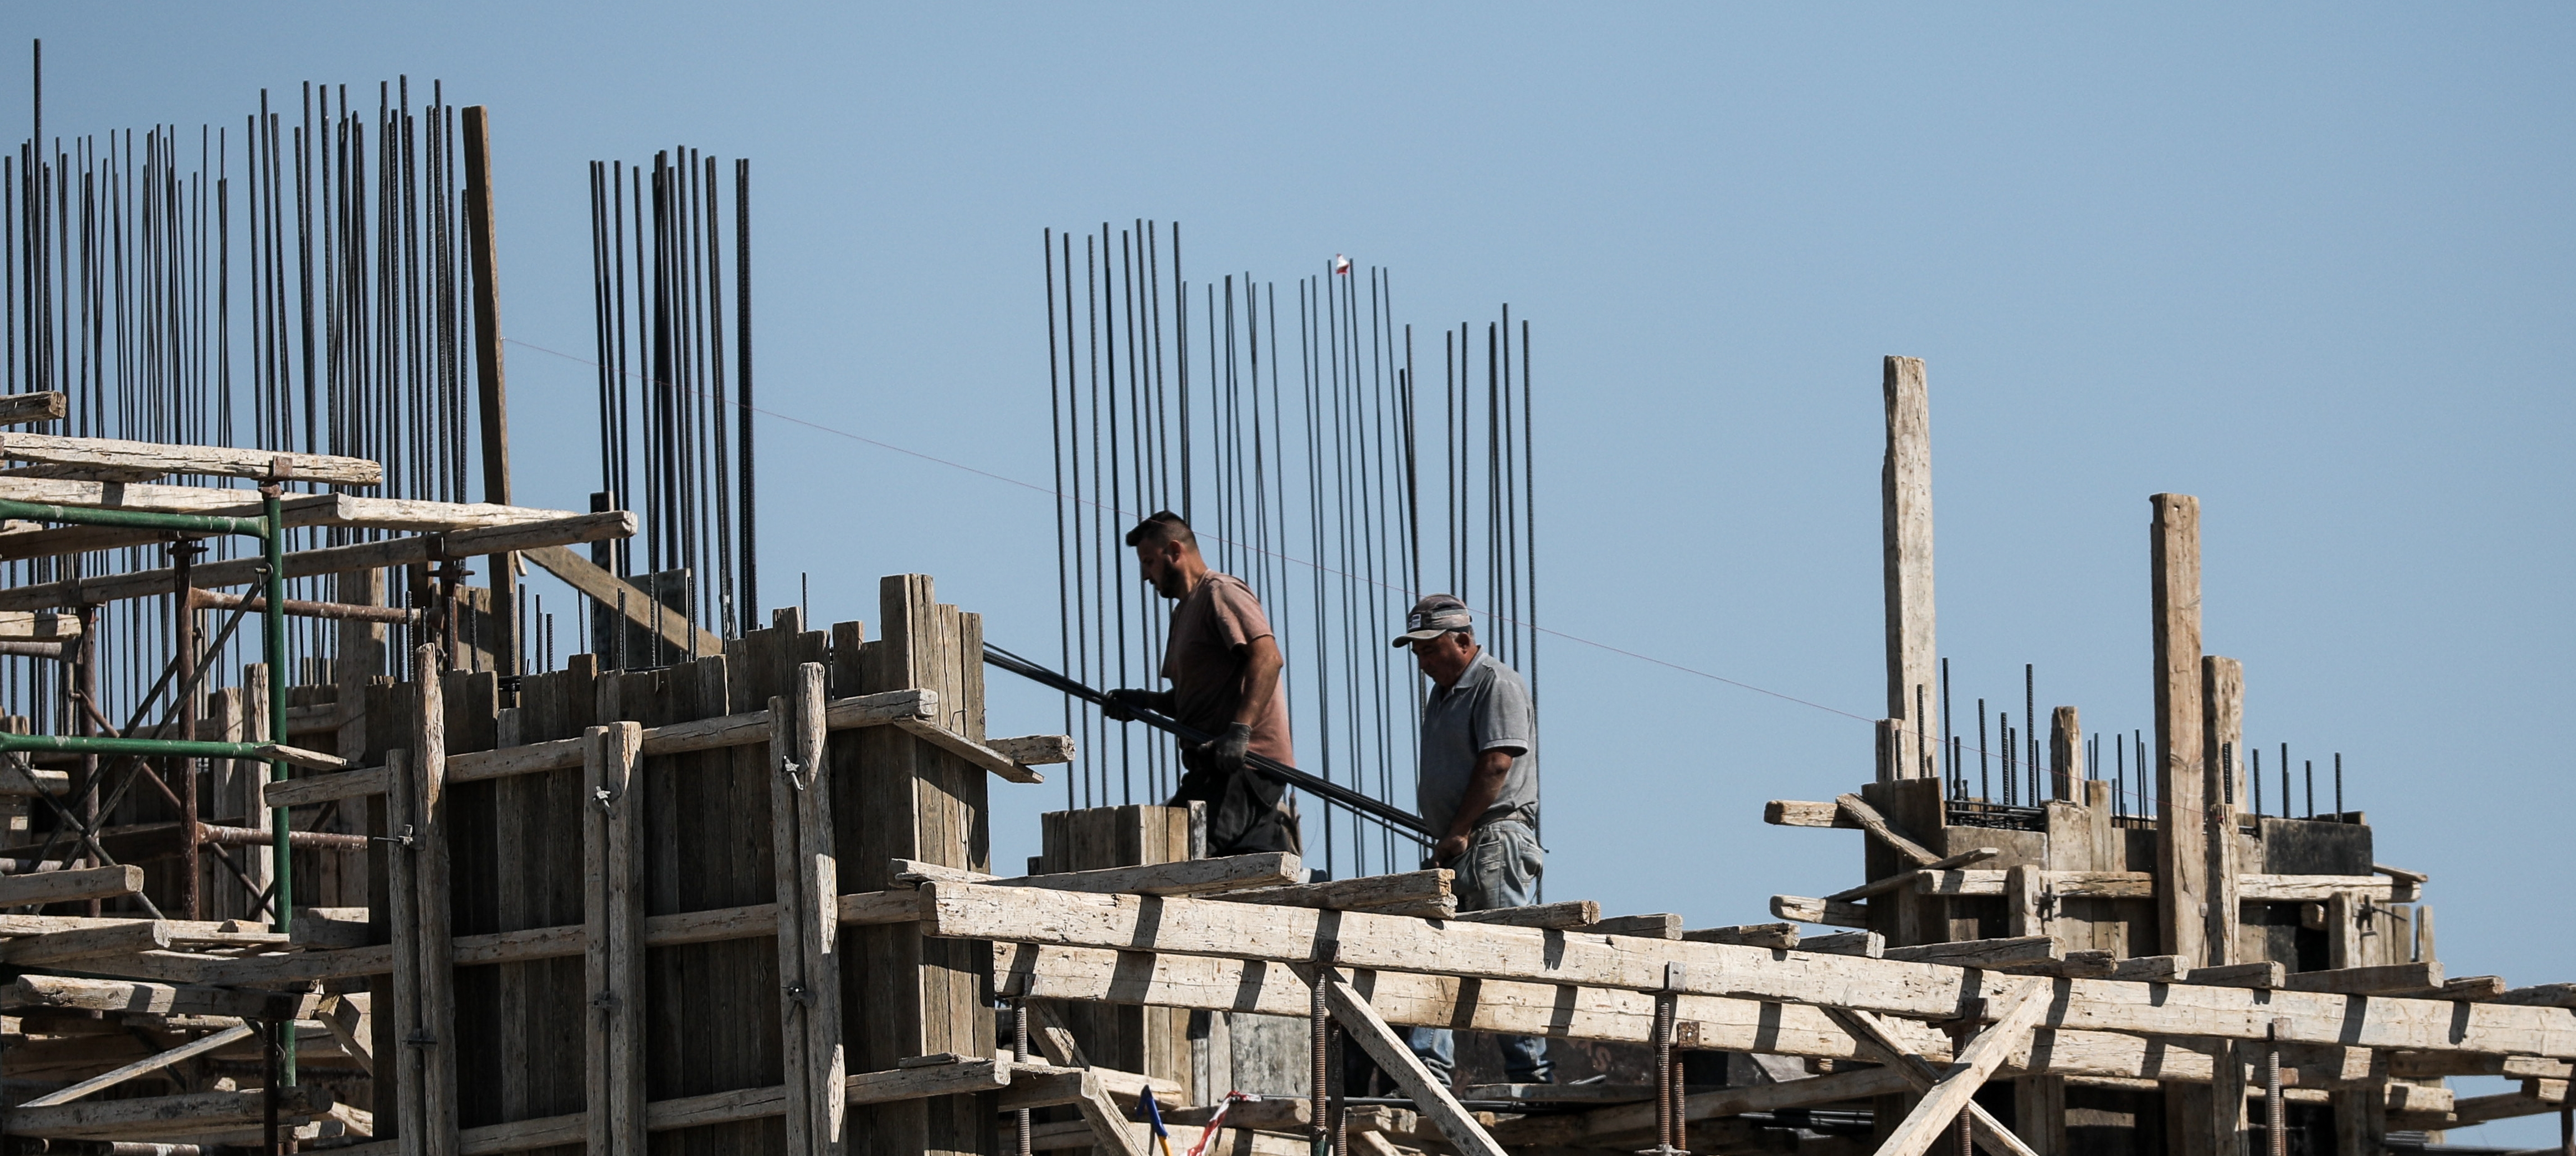 Αναστολή ΦΠΑ οικοδομή: Ο Μητσοτάκης ανακοινώνει “πάγωμα” ΦΠΑ για τρία χρόνια